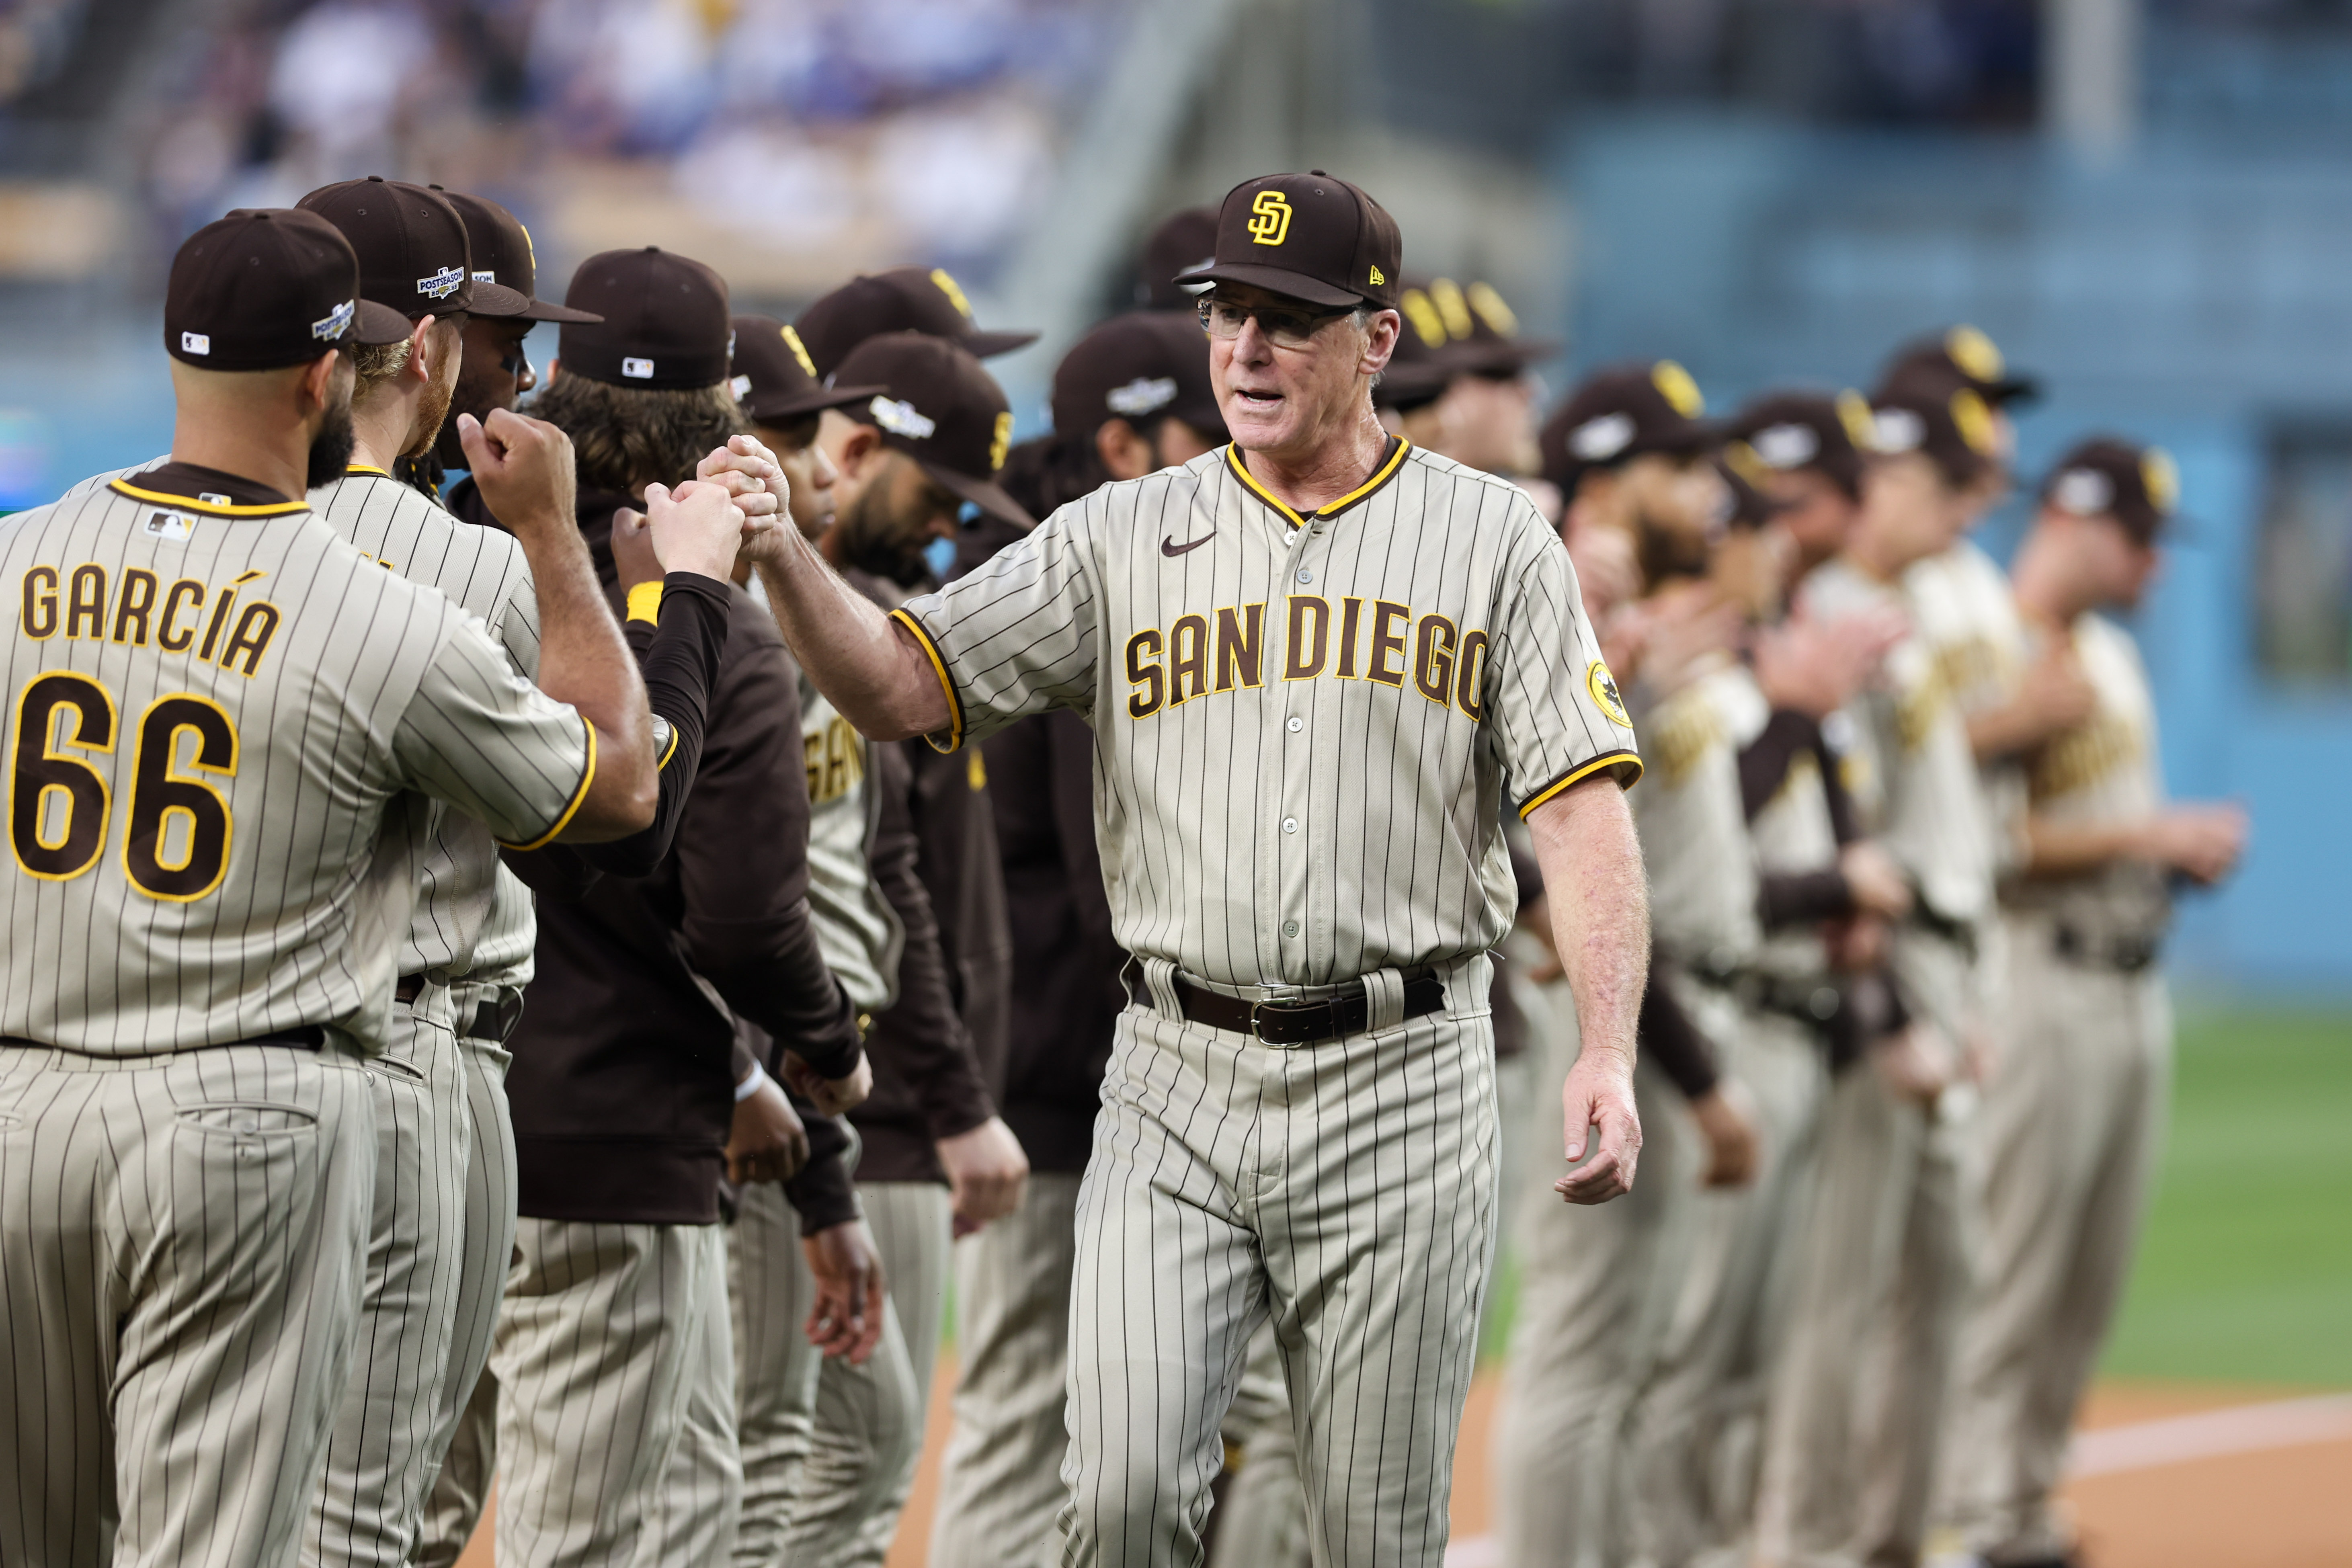 San Diego Padres Uniform Lineup